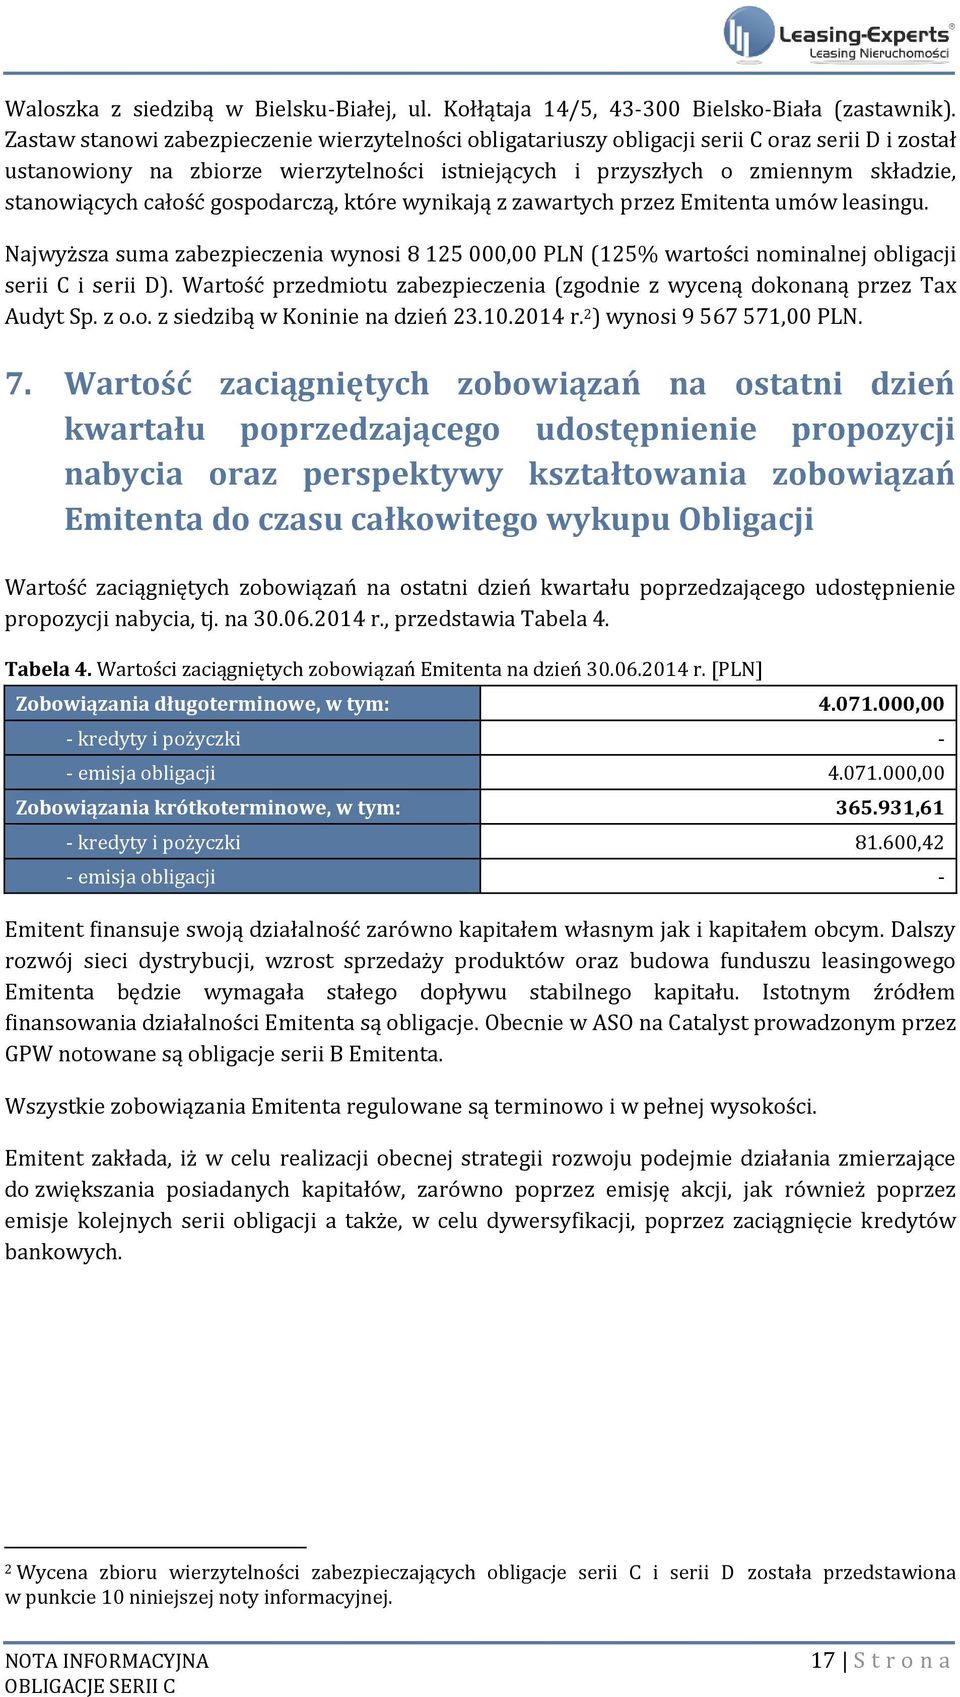 całość gospodarczą, które wynikają z zawartych przez Emitenta umów leasingu. Najwyższa suma zabezpieczenia wynosi 8 125 000,00 PLN (125% wartości nominalnej obligacji serii C i serii D).